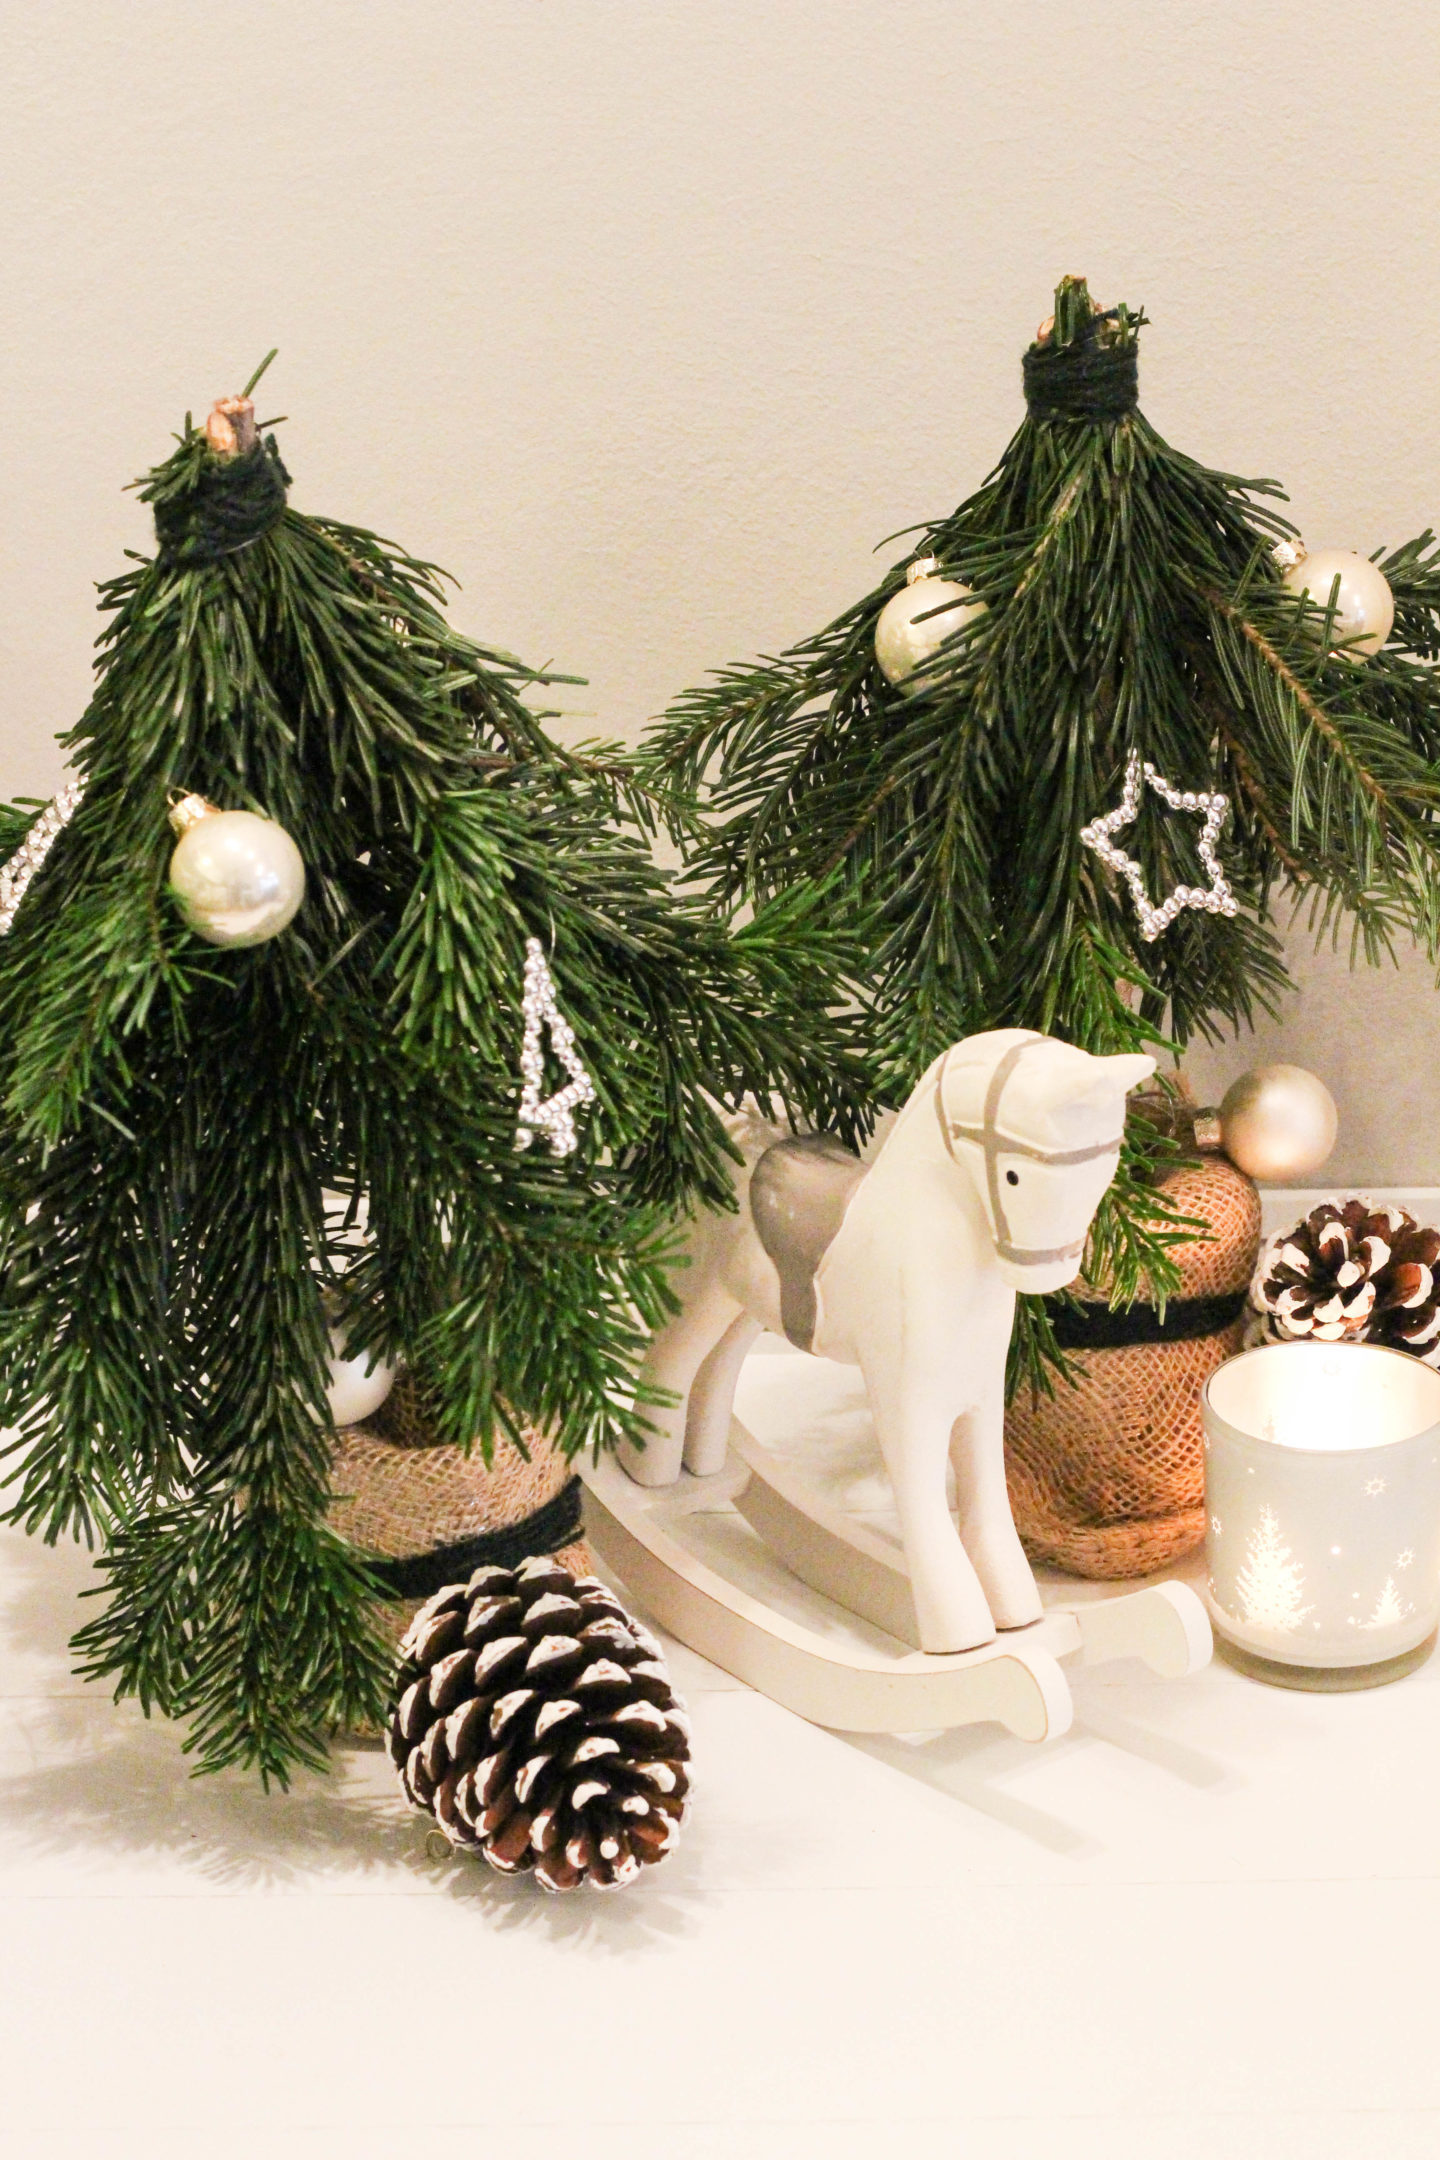 vegane-nussknoepfe-diy-weihnachtsbaum-selbstgemacht-christmas-homespa-plantbased-1-von-1-11